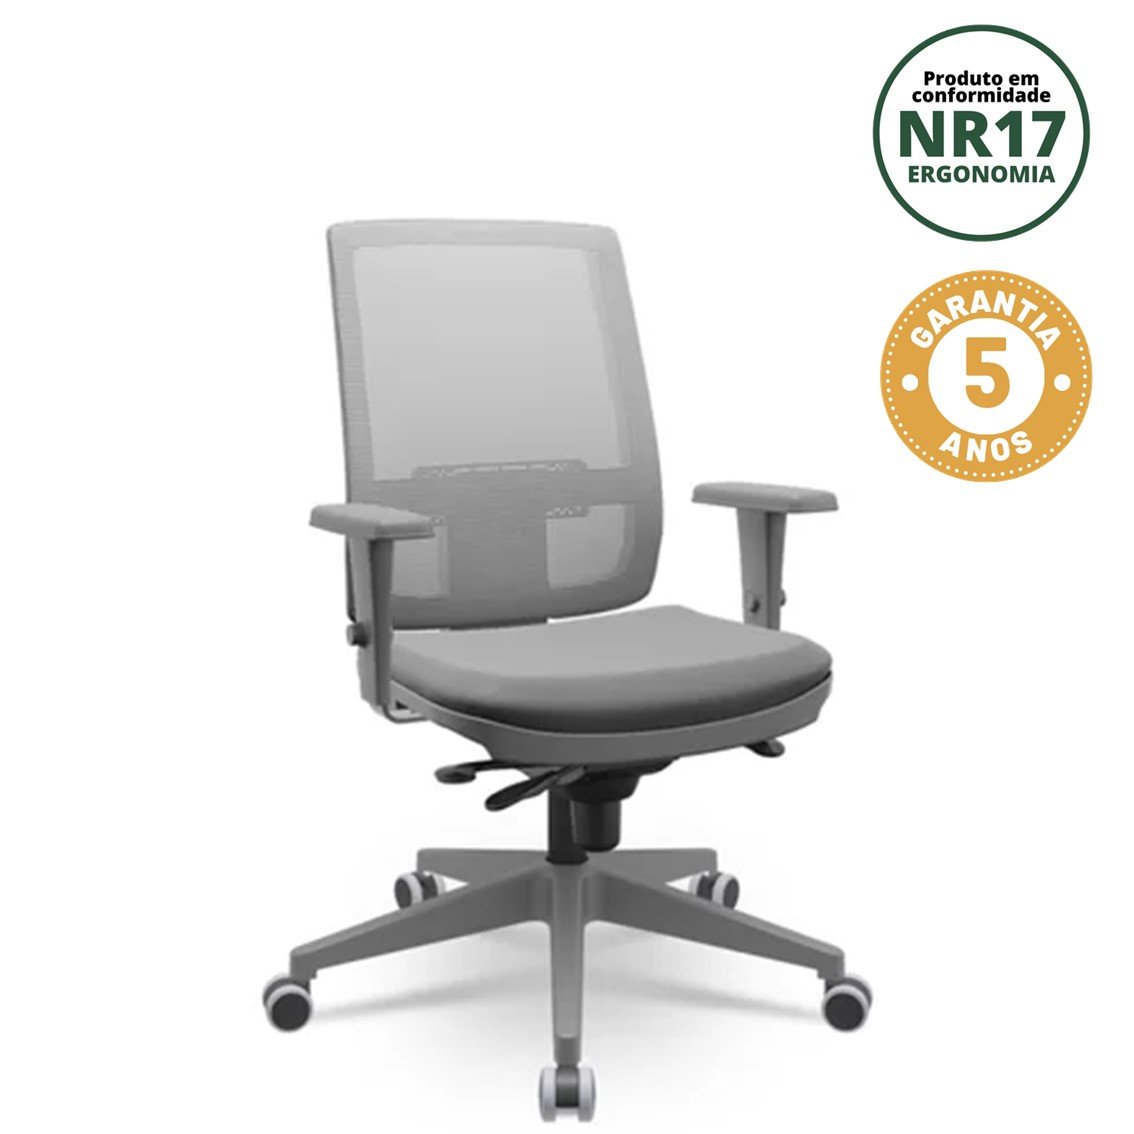 Cadeira Escritório Presidente Brizza NR17 com Encosto Regulável Piramidal - 1